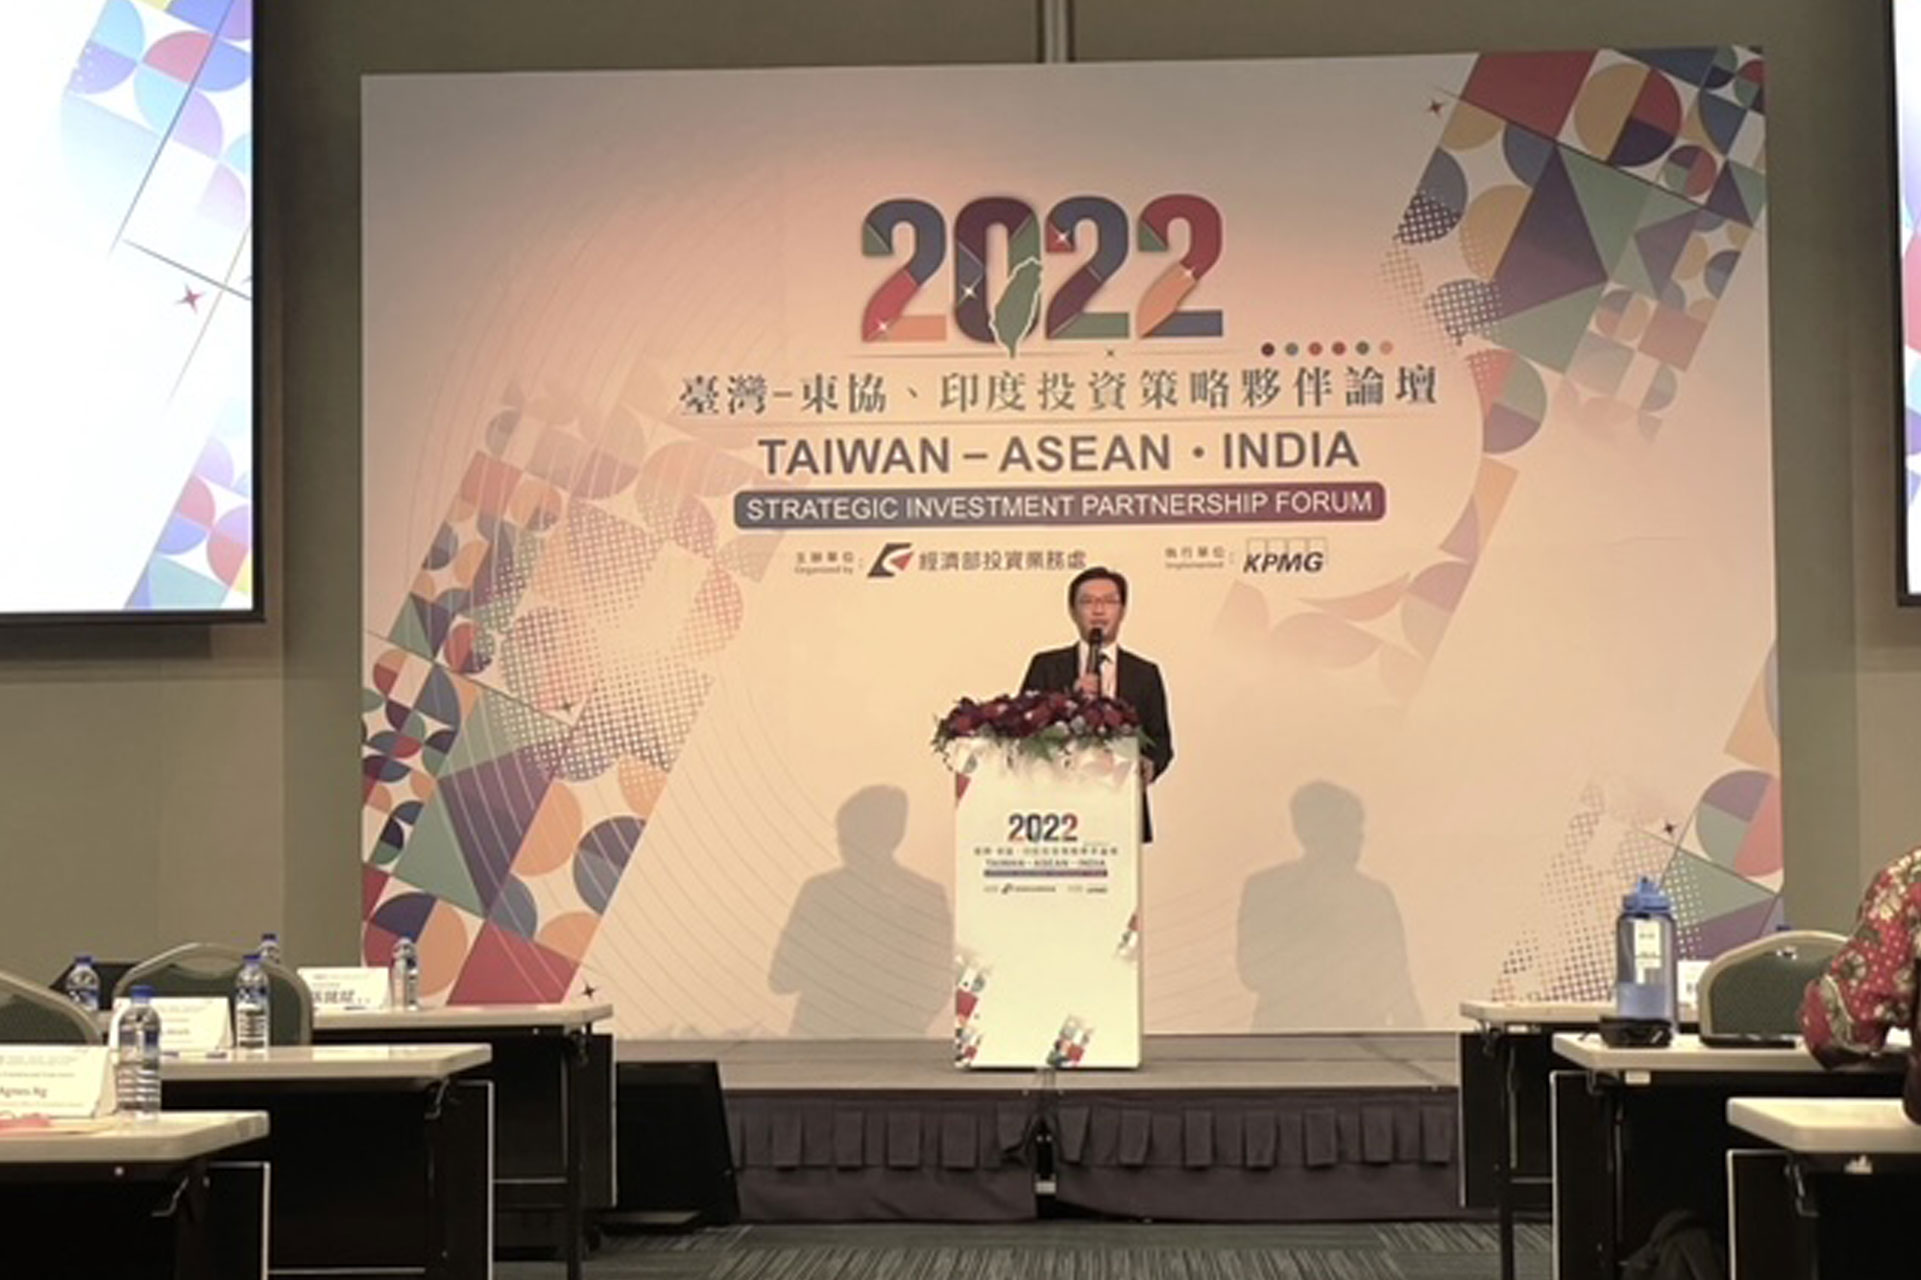 2022臺灣-東協、印度投資策略夥伴論壇-5